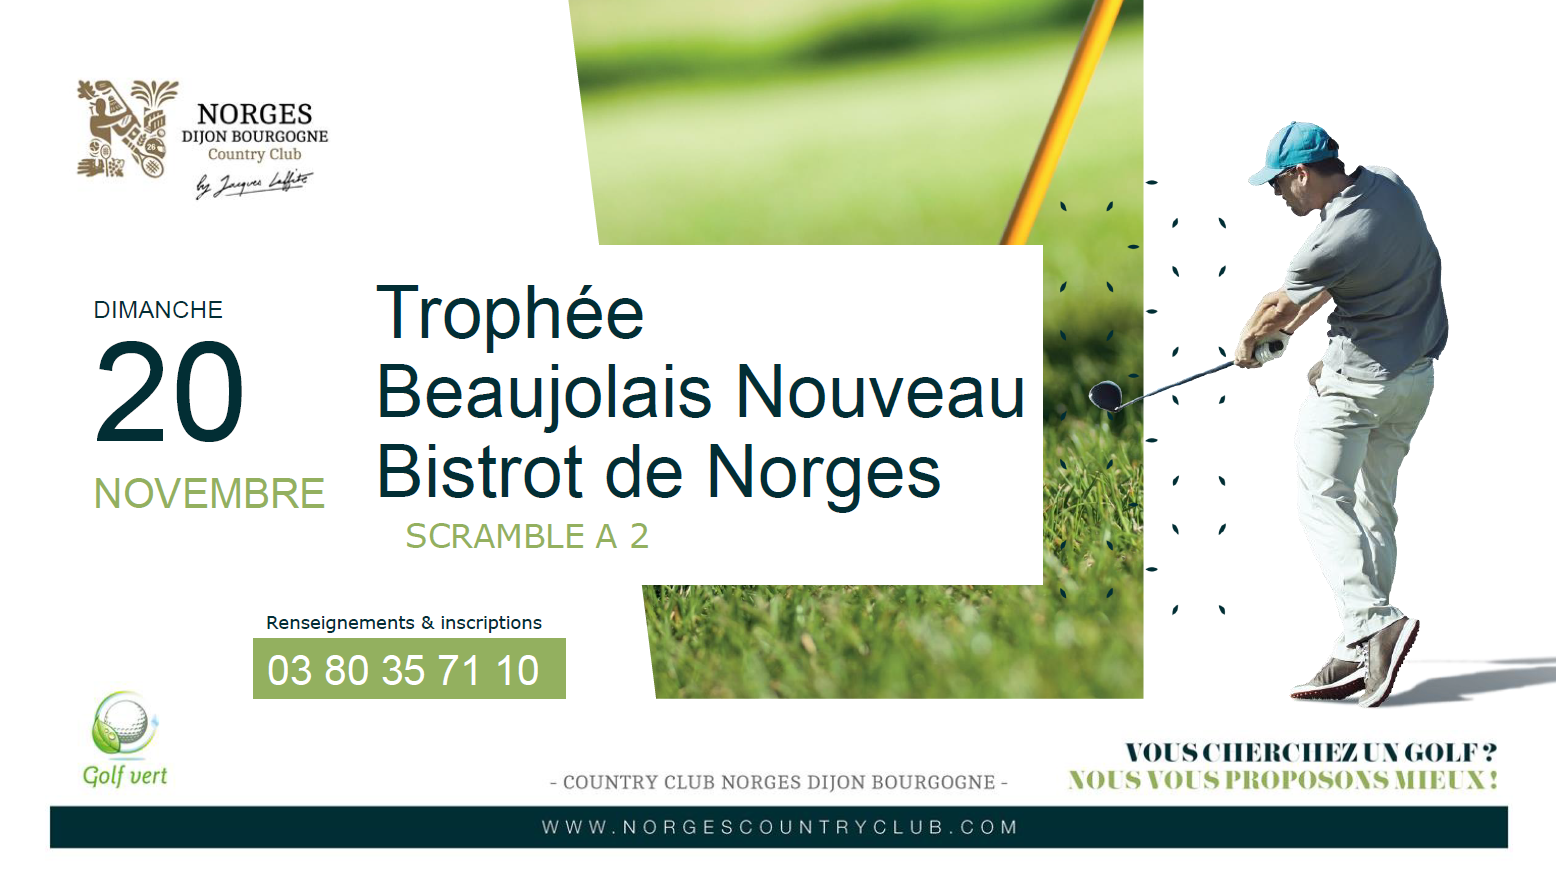 Trophée Beaujolais Nouveau Bistrot de Norges